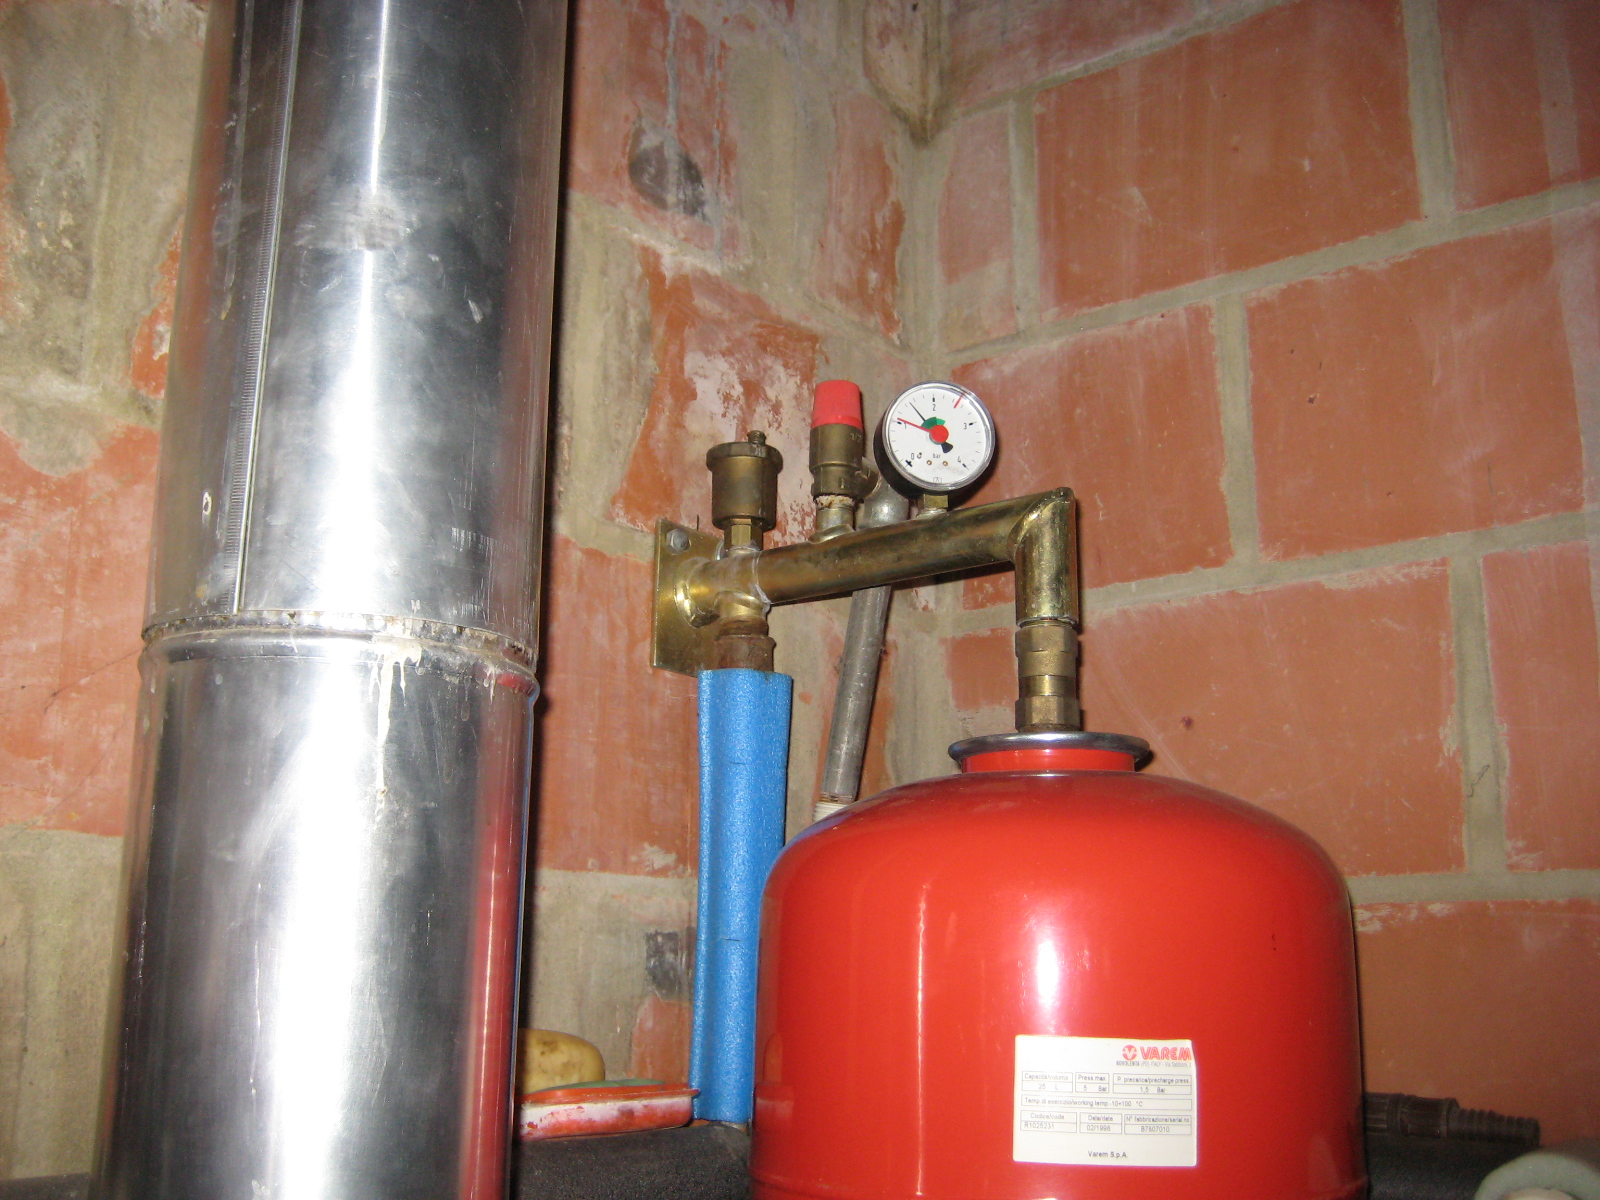 Groupe de sécurité pour eau chaude sanitaire d'une chaudière gaz ?